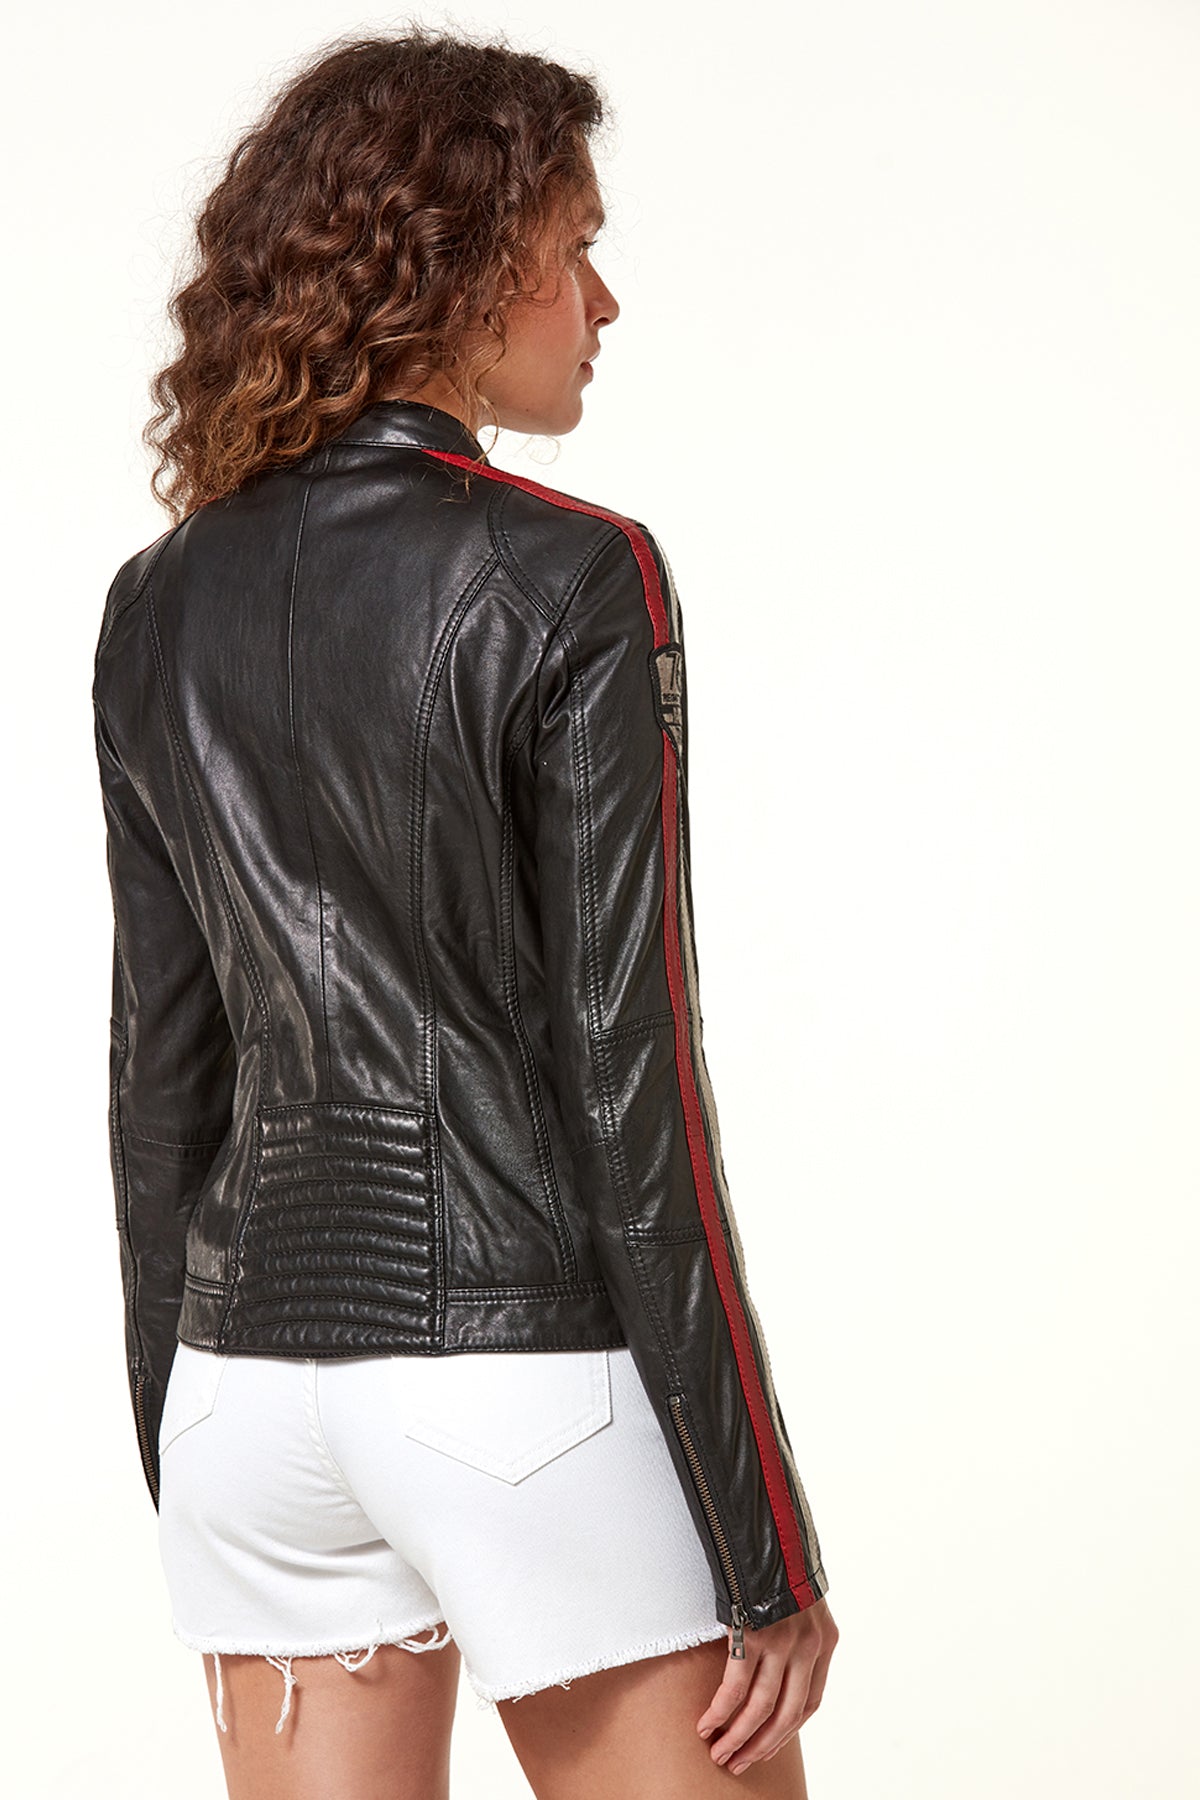 Ladyracer Kadın Siyah Biker Deri Ceket